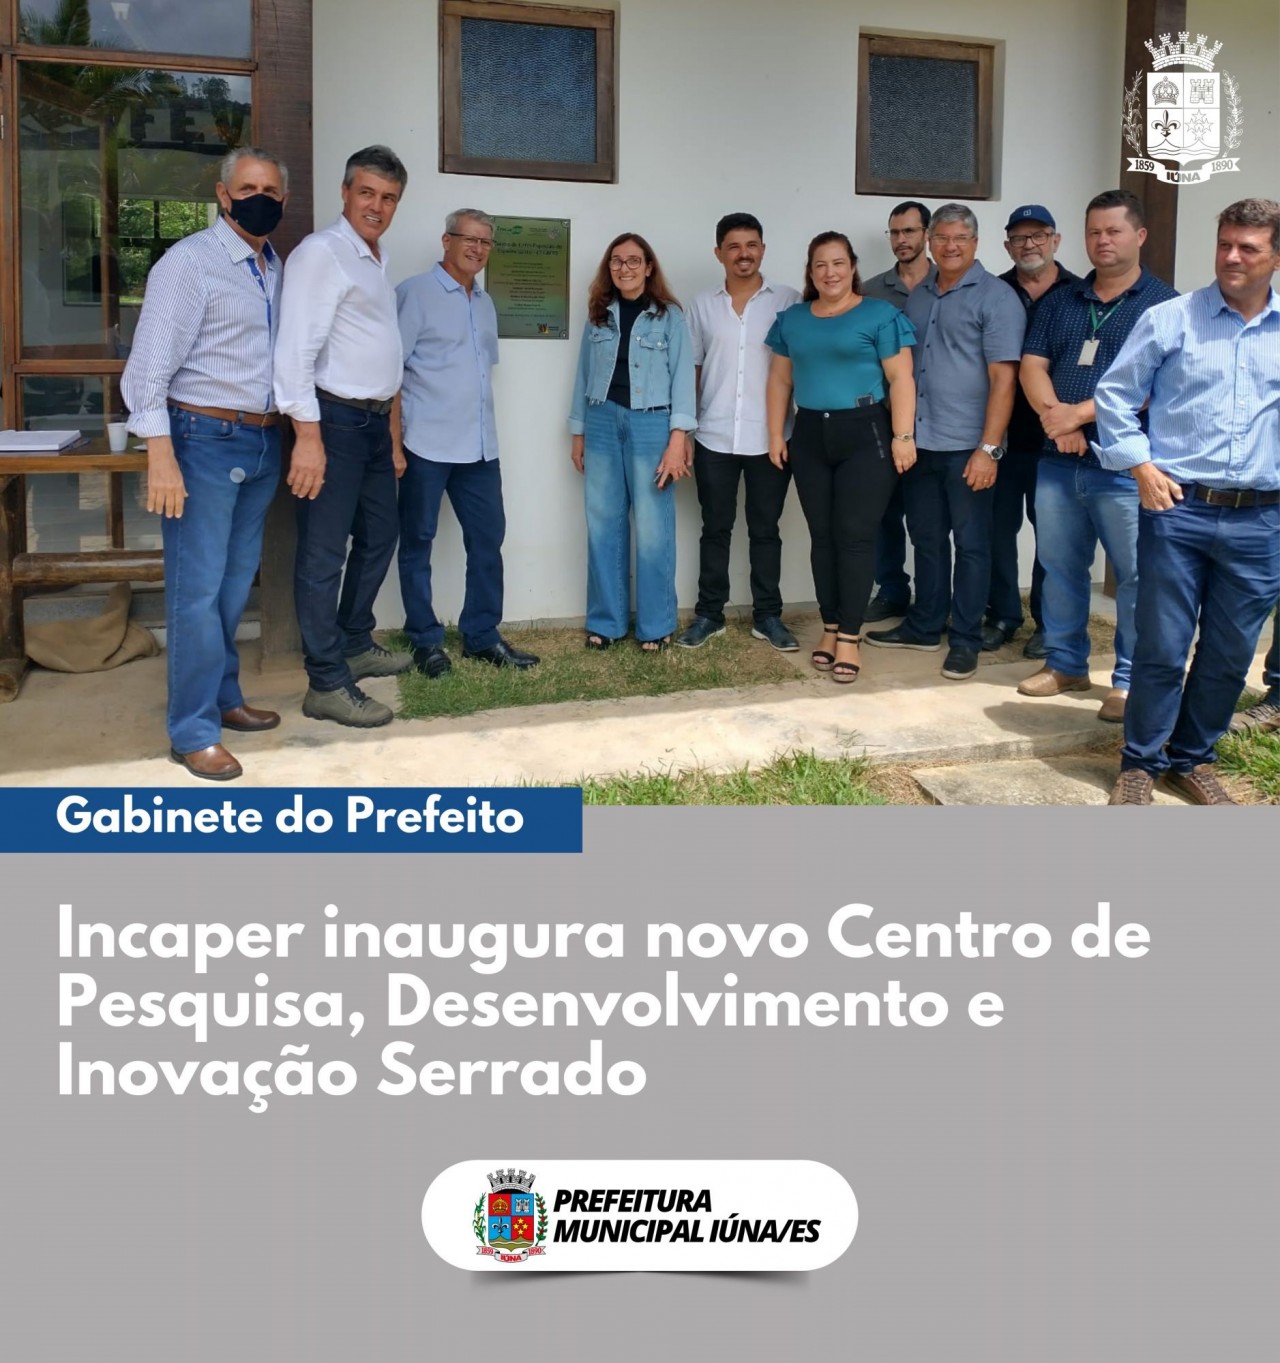 Incaper inaugura novo Centro de Pesquisa, Desenvolvimento e Inovação Serrado.